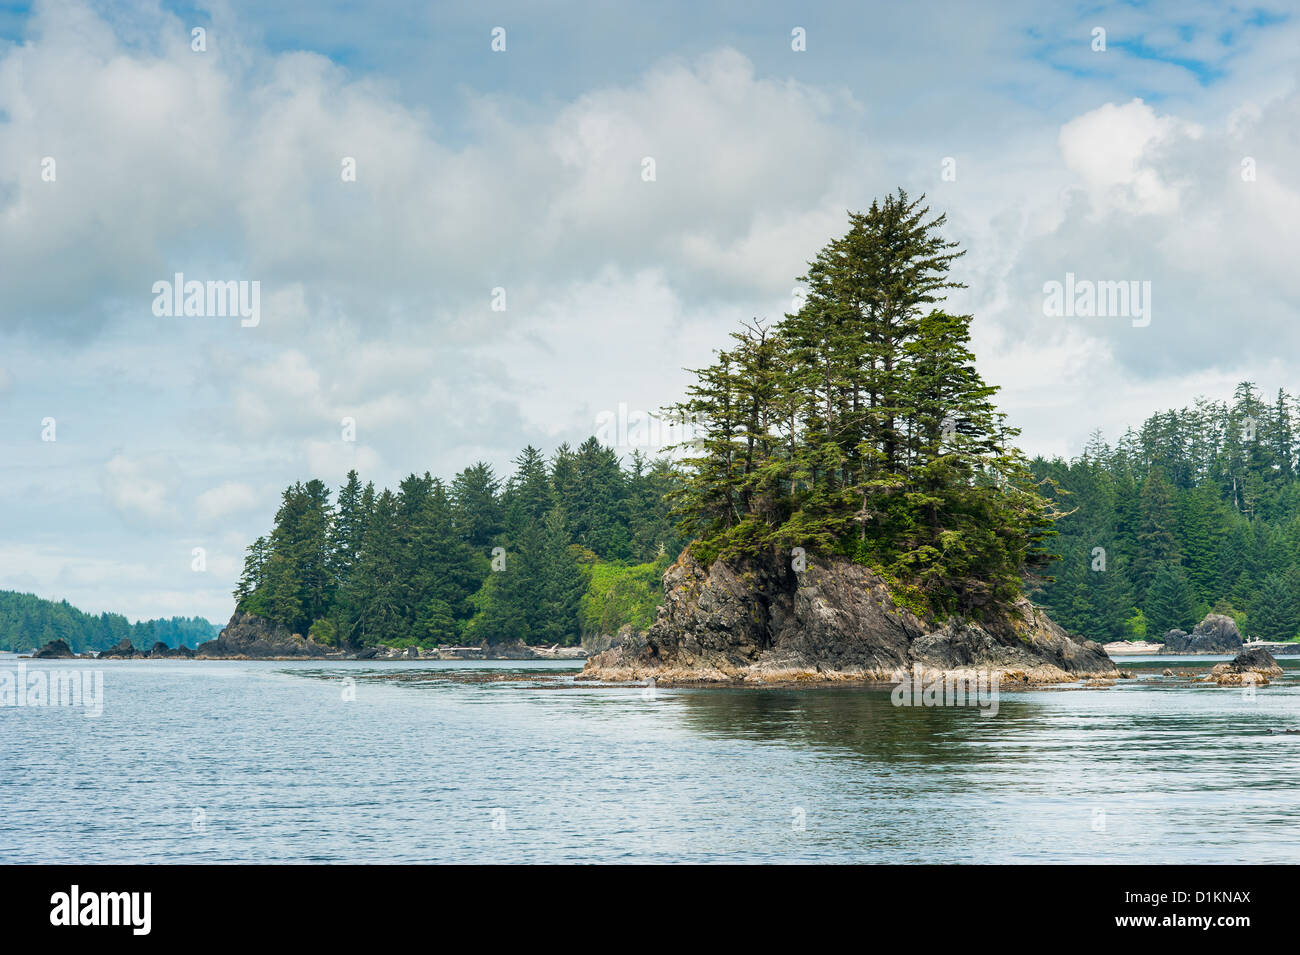 Port avec les petits États insulaires de l'île de Vancouver, Colombie-Britannique, Canada Banque D'Images